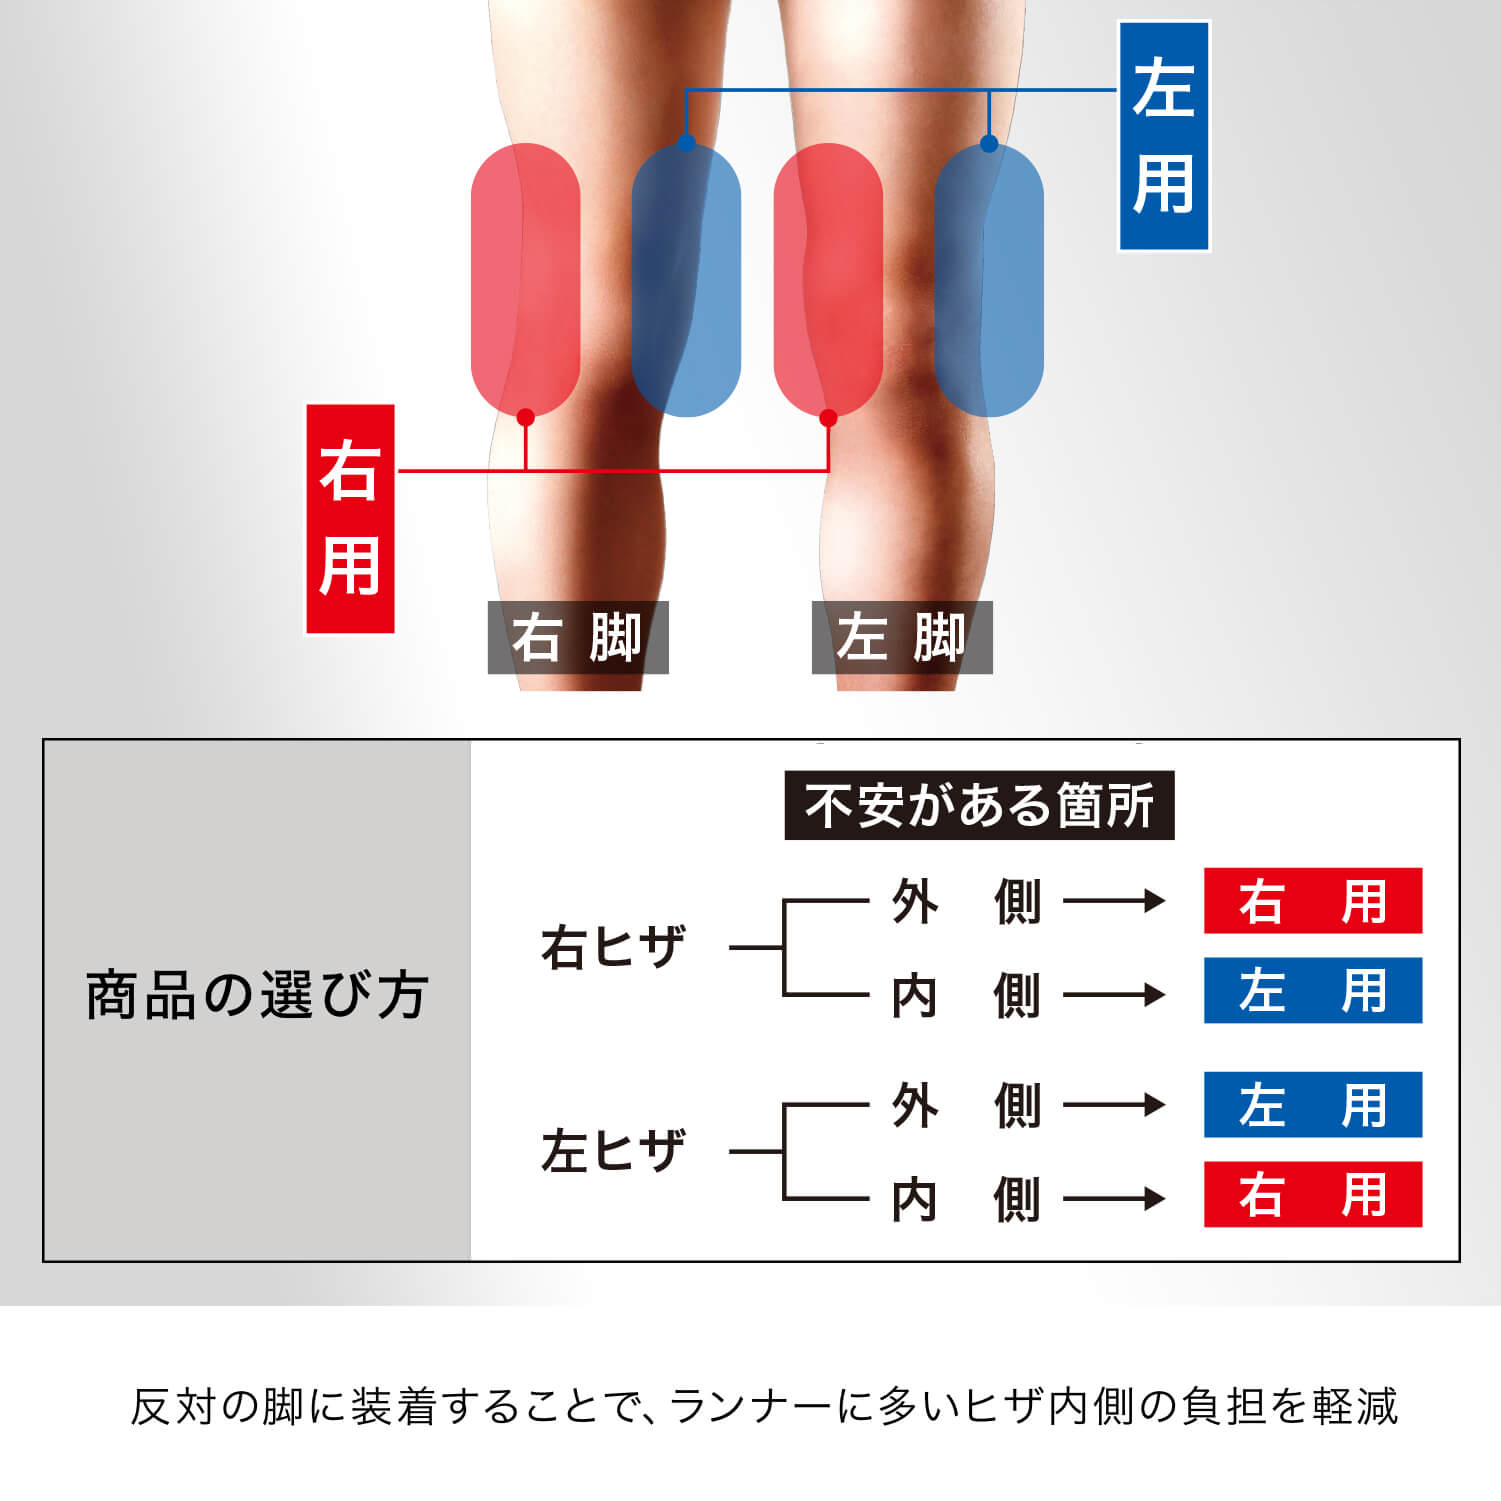 反対の脚に装着することで、ランナーに多い膝内側の負担も軽減